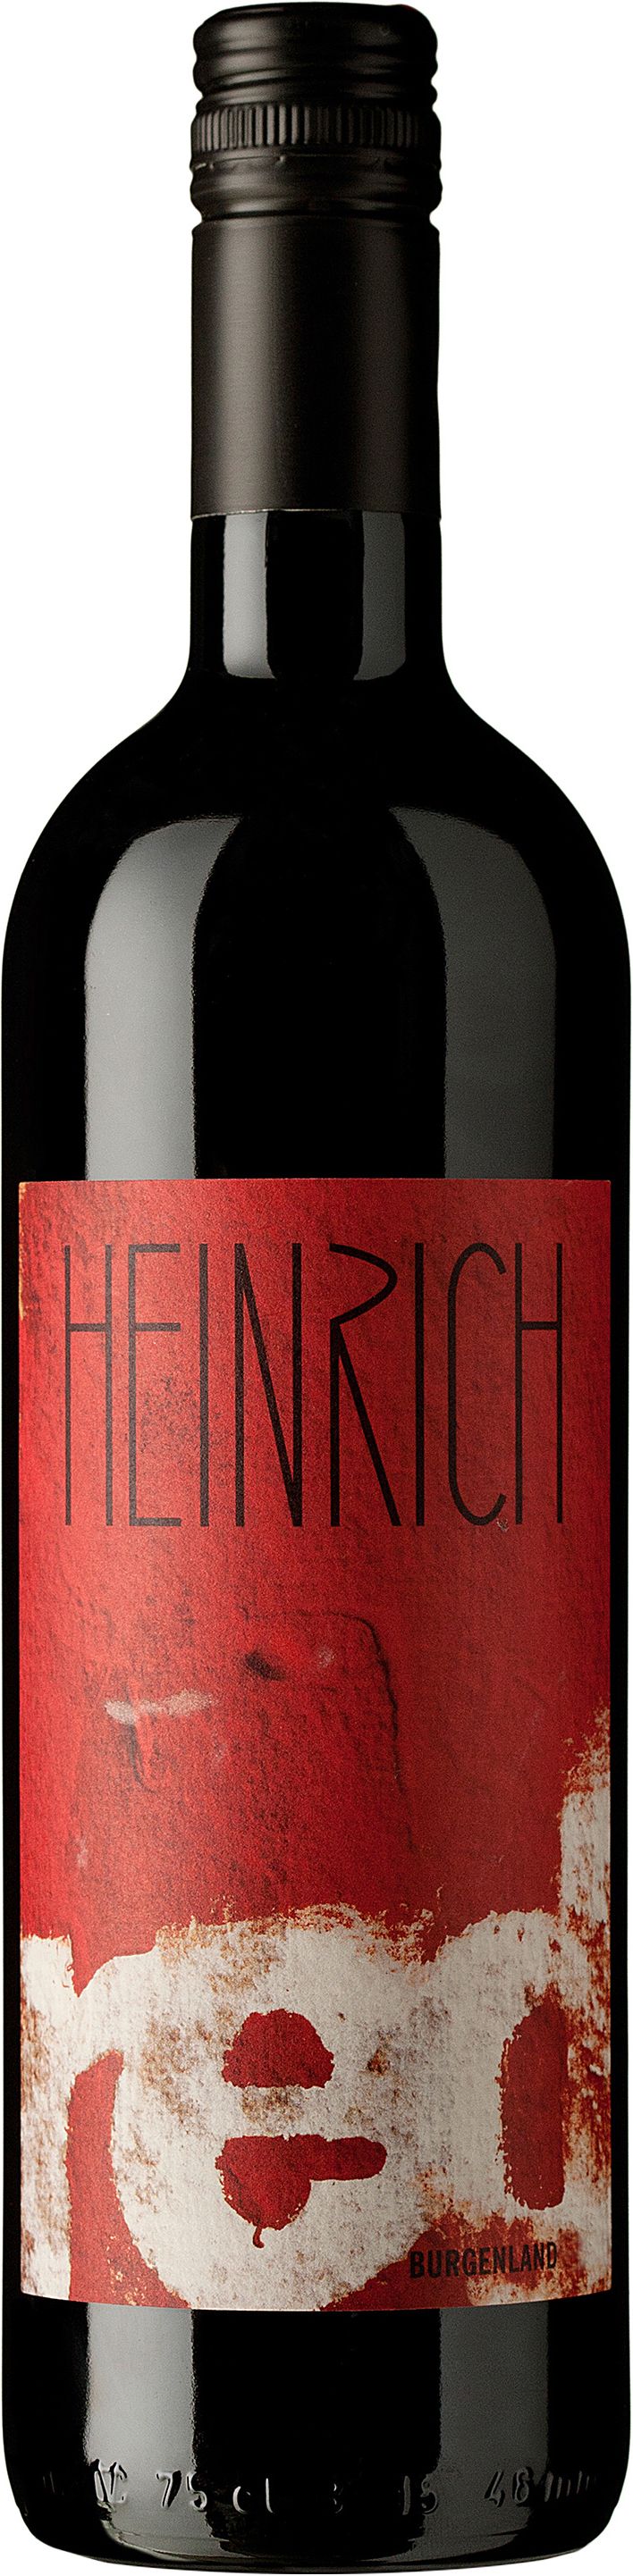 Heinrich, Red, 2012